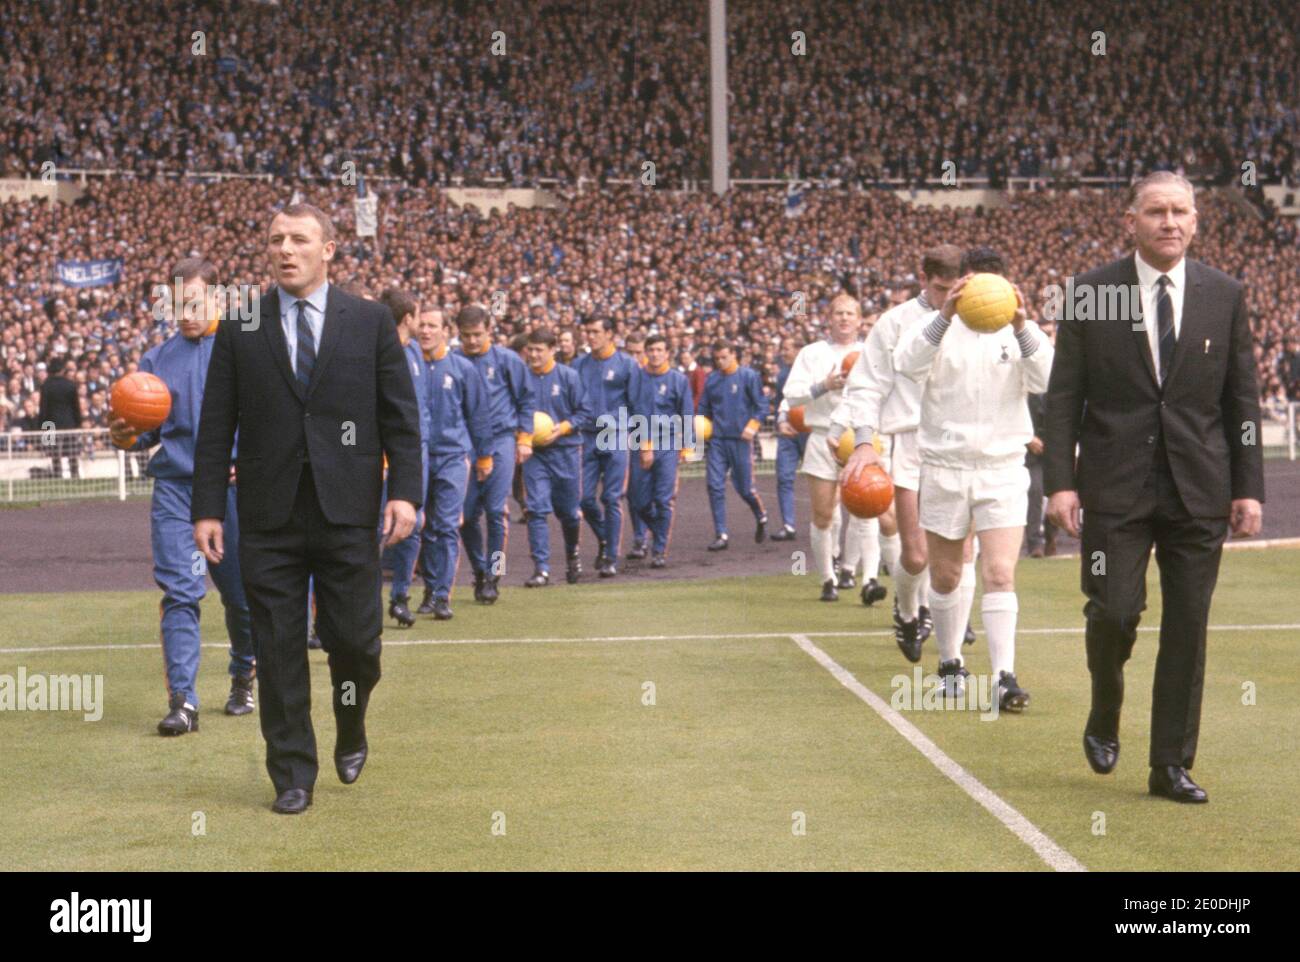 Foto del archivo fechada el 20/05/67 del entonces gerente de Chelsea Tommy Docherty (izquierda) y luego el gerente de Tottenham Hotspur Bill Nicholson liderando sus equipos en el campo para la final de la FA Cup. El Sr. Docherty ha muerto a la edad de 92 años tras una larga enfermedad. Foto de stock